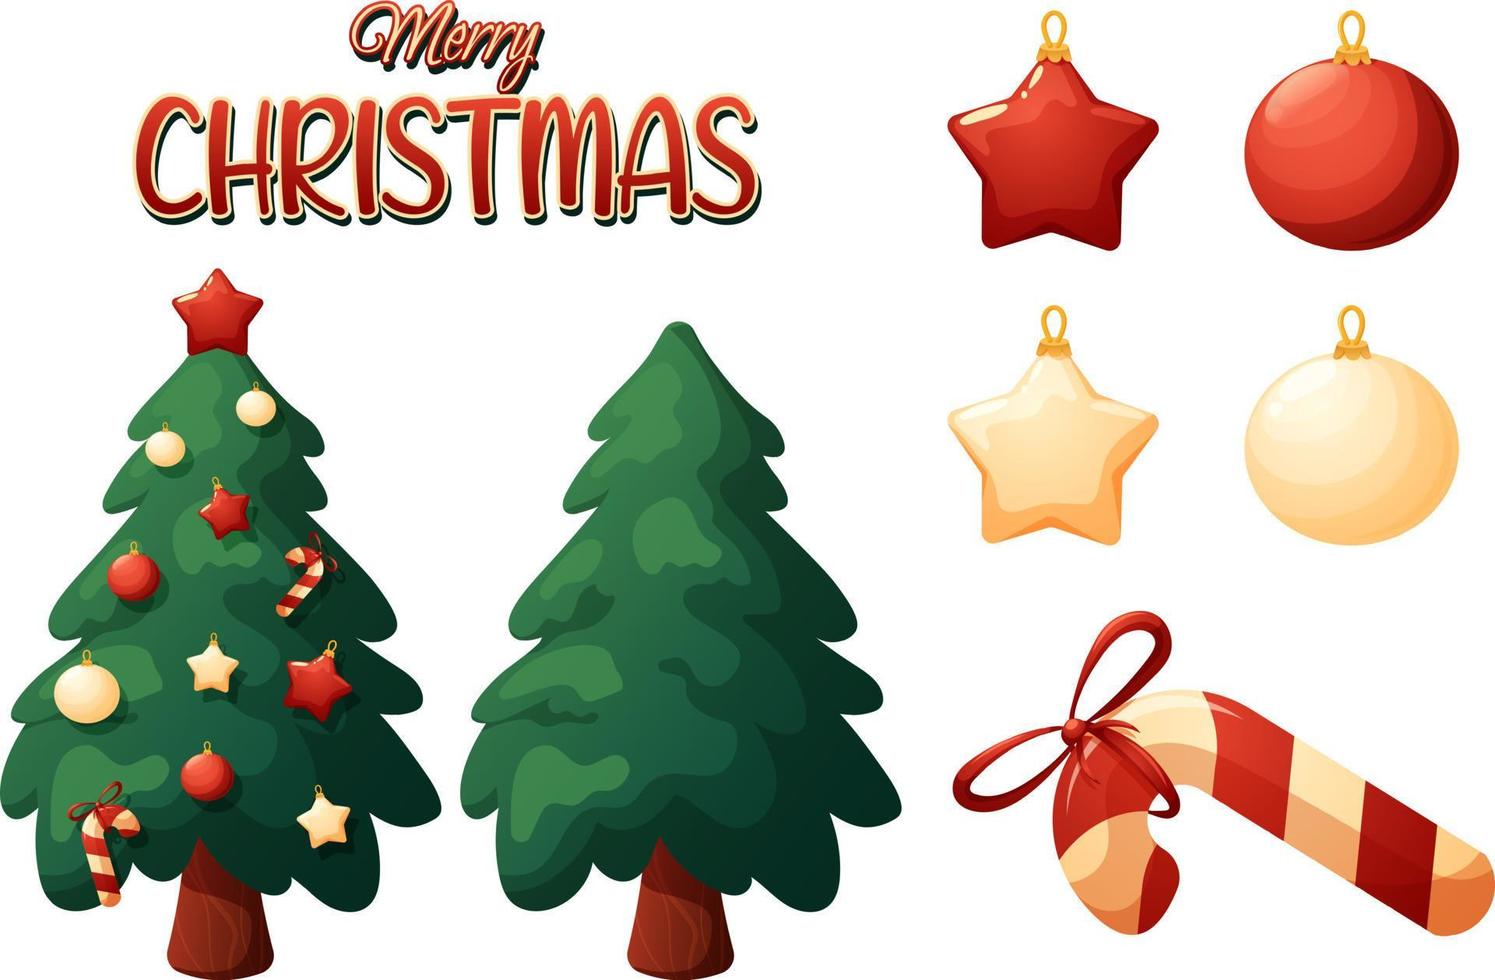 weihnachtsset im karikaturstil von weihnachtsbäumen, frohe weihnachten und spielzeug beschriftend vektor